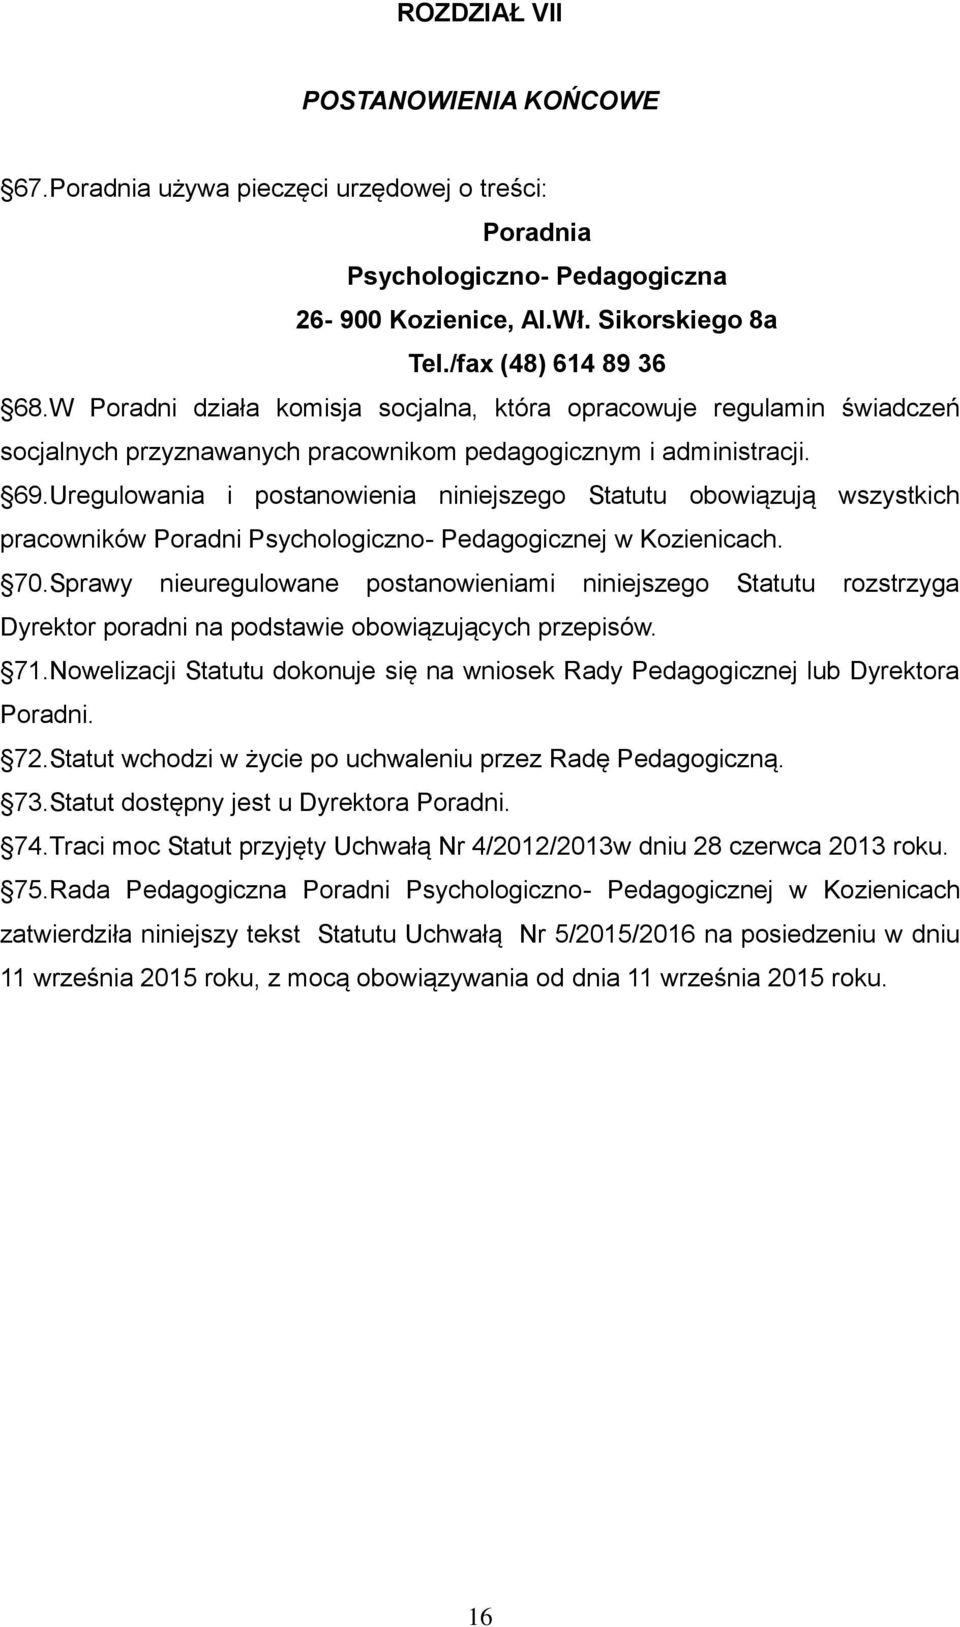 Uregulowania i postanowienia niniejszego Statutu obowiązują wszystkich pracowników Poradni Psychologiczno- Pedagogicznej w Kozienicach. 70.